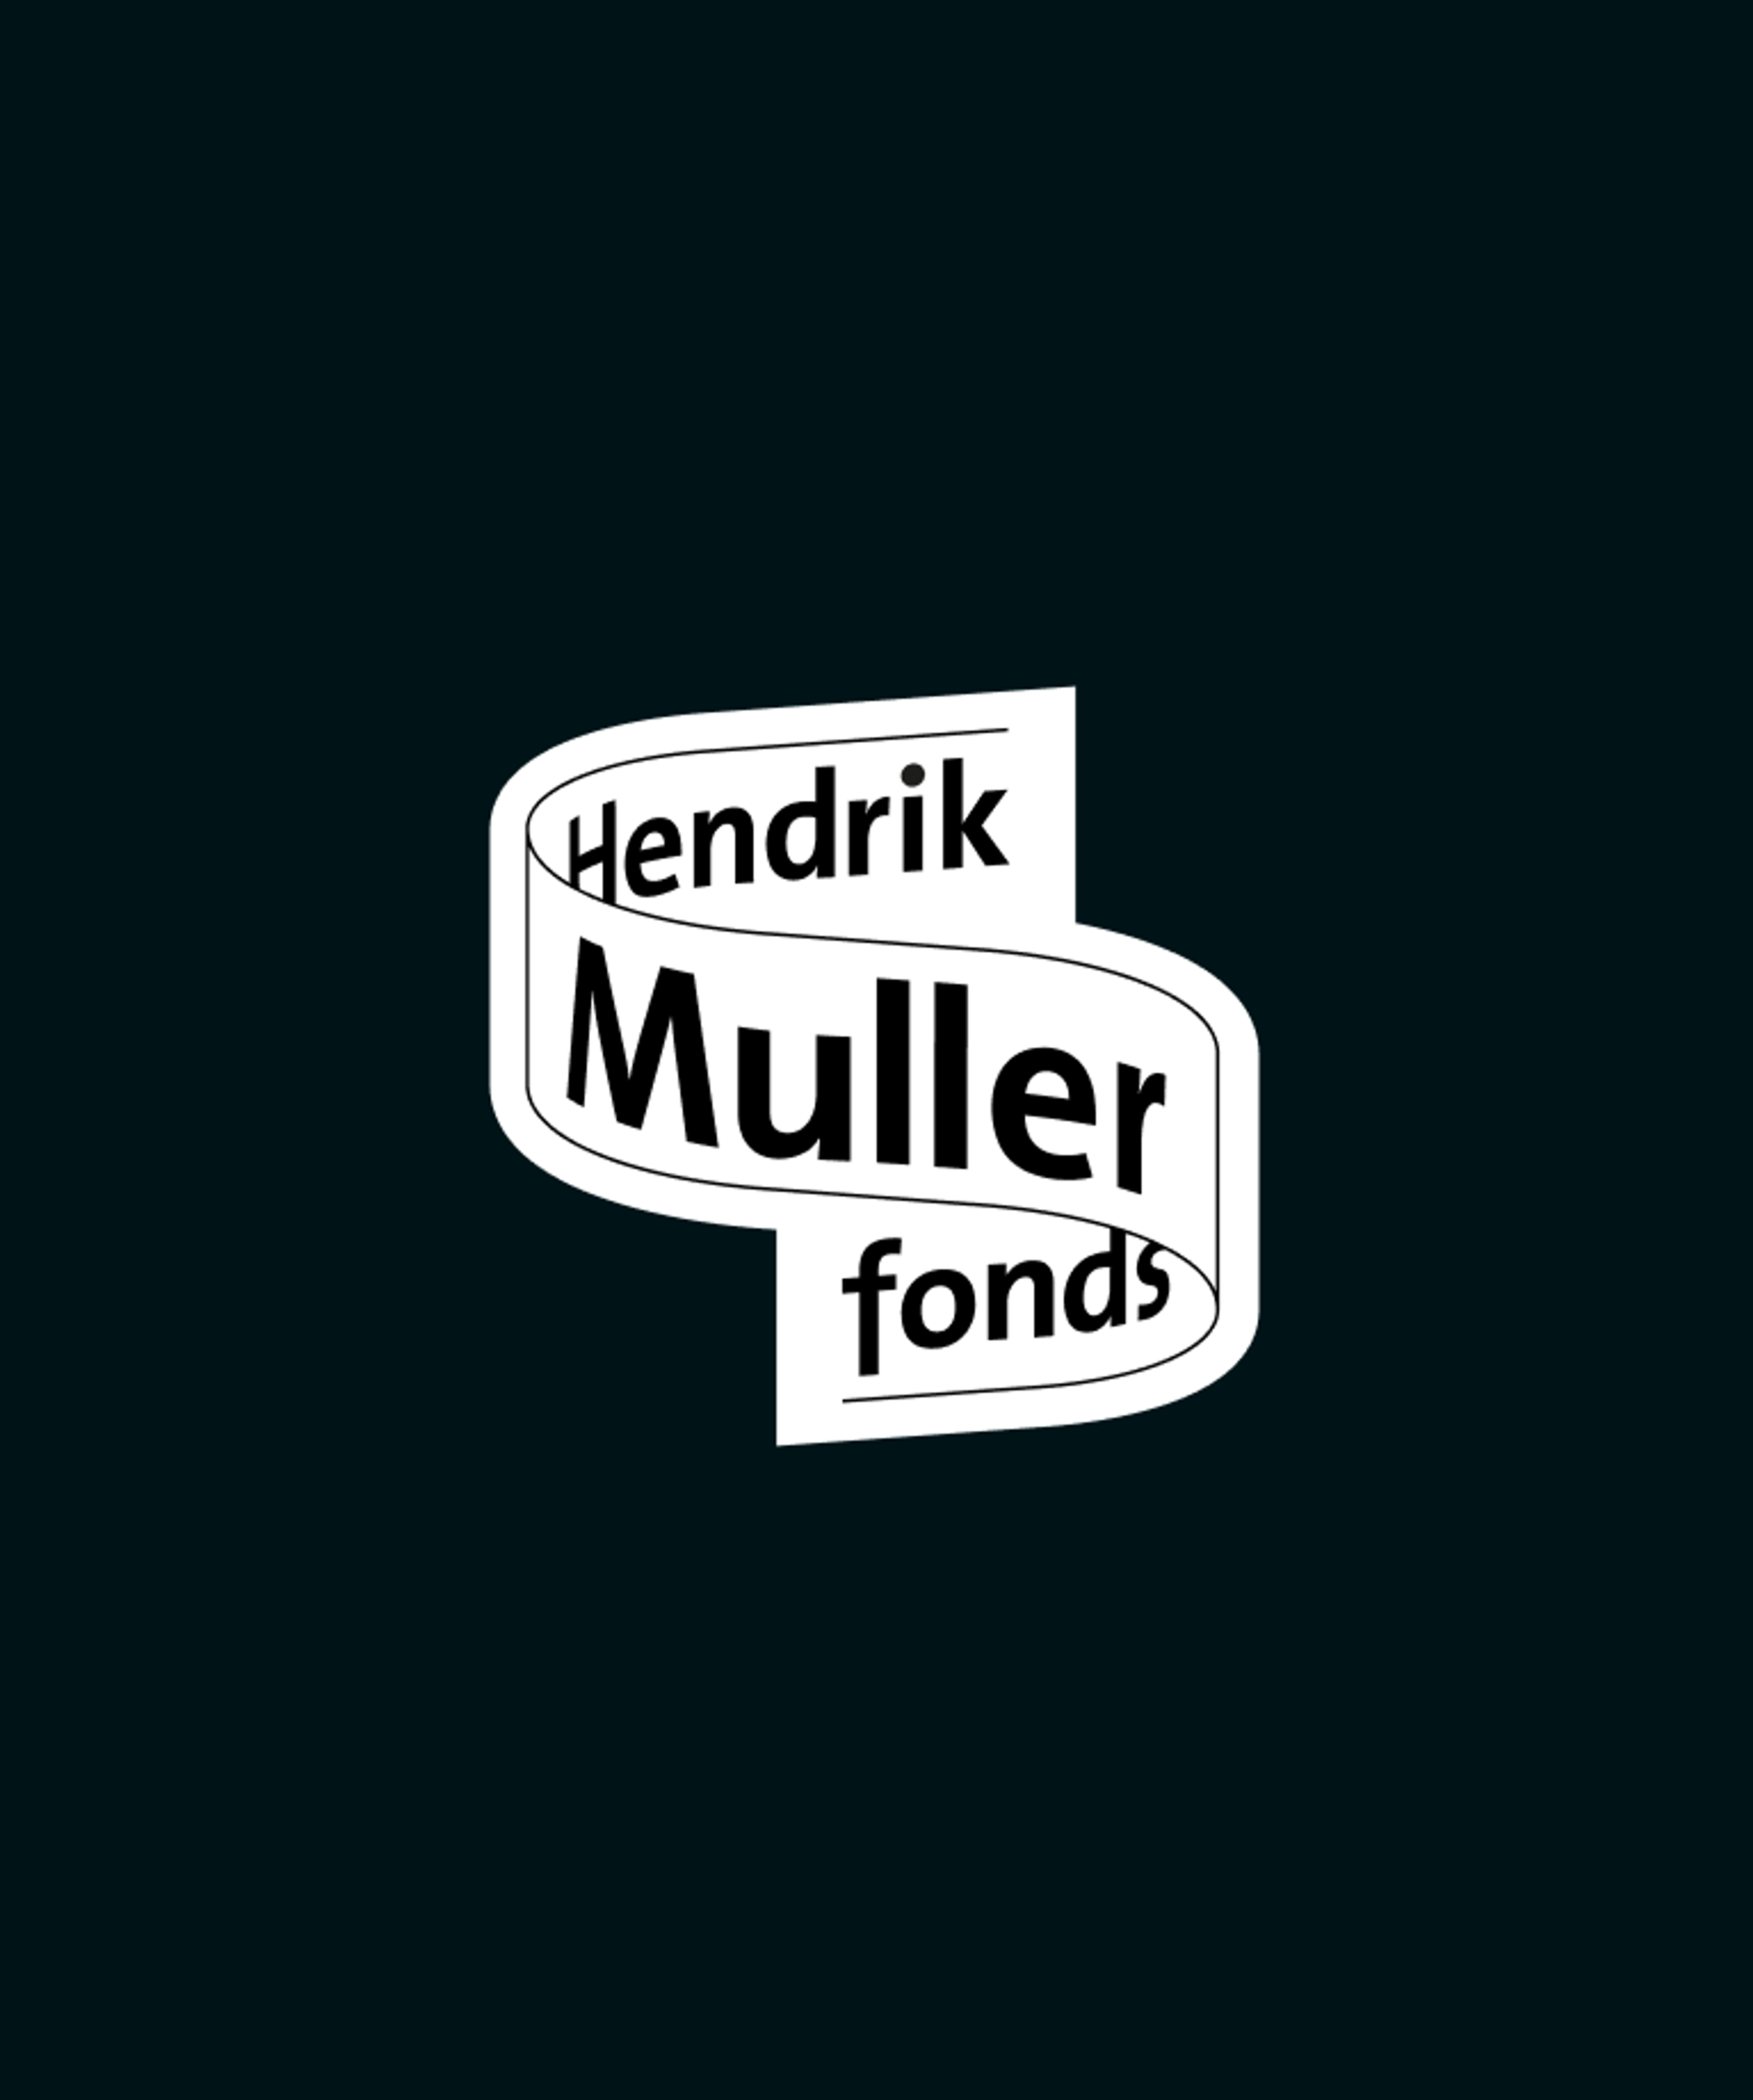 Hendrik Muller Fonds logo